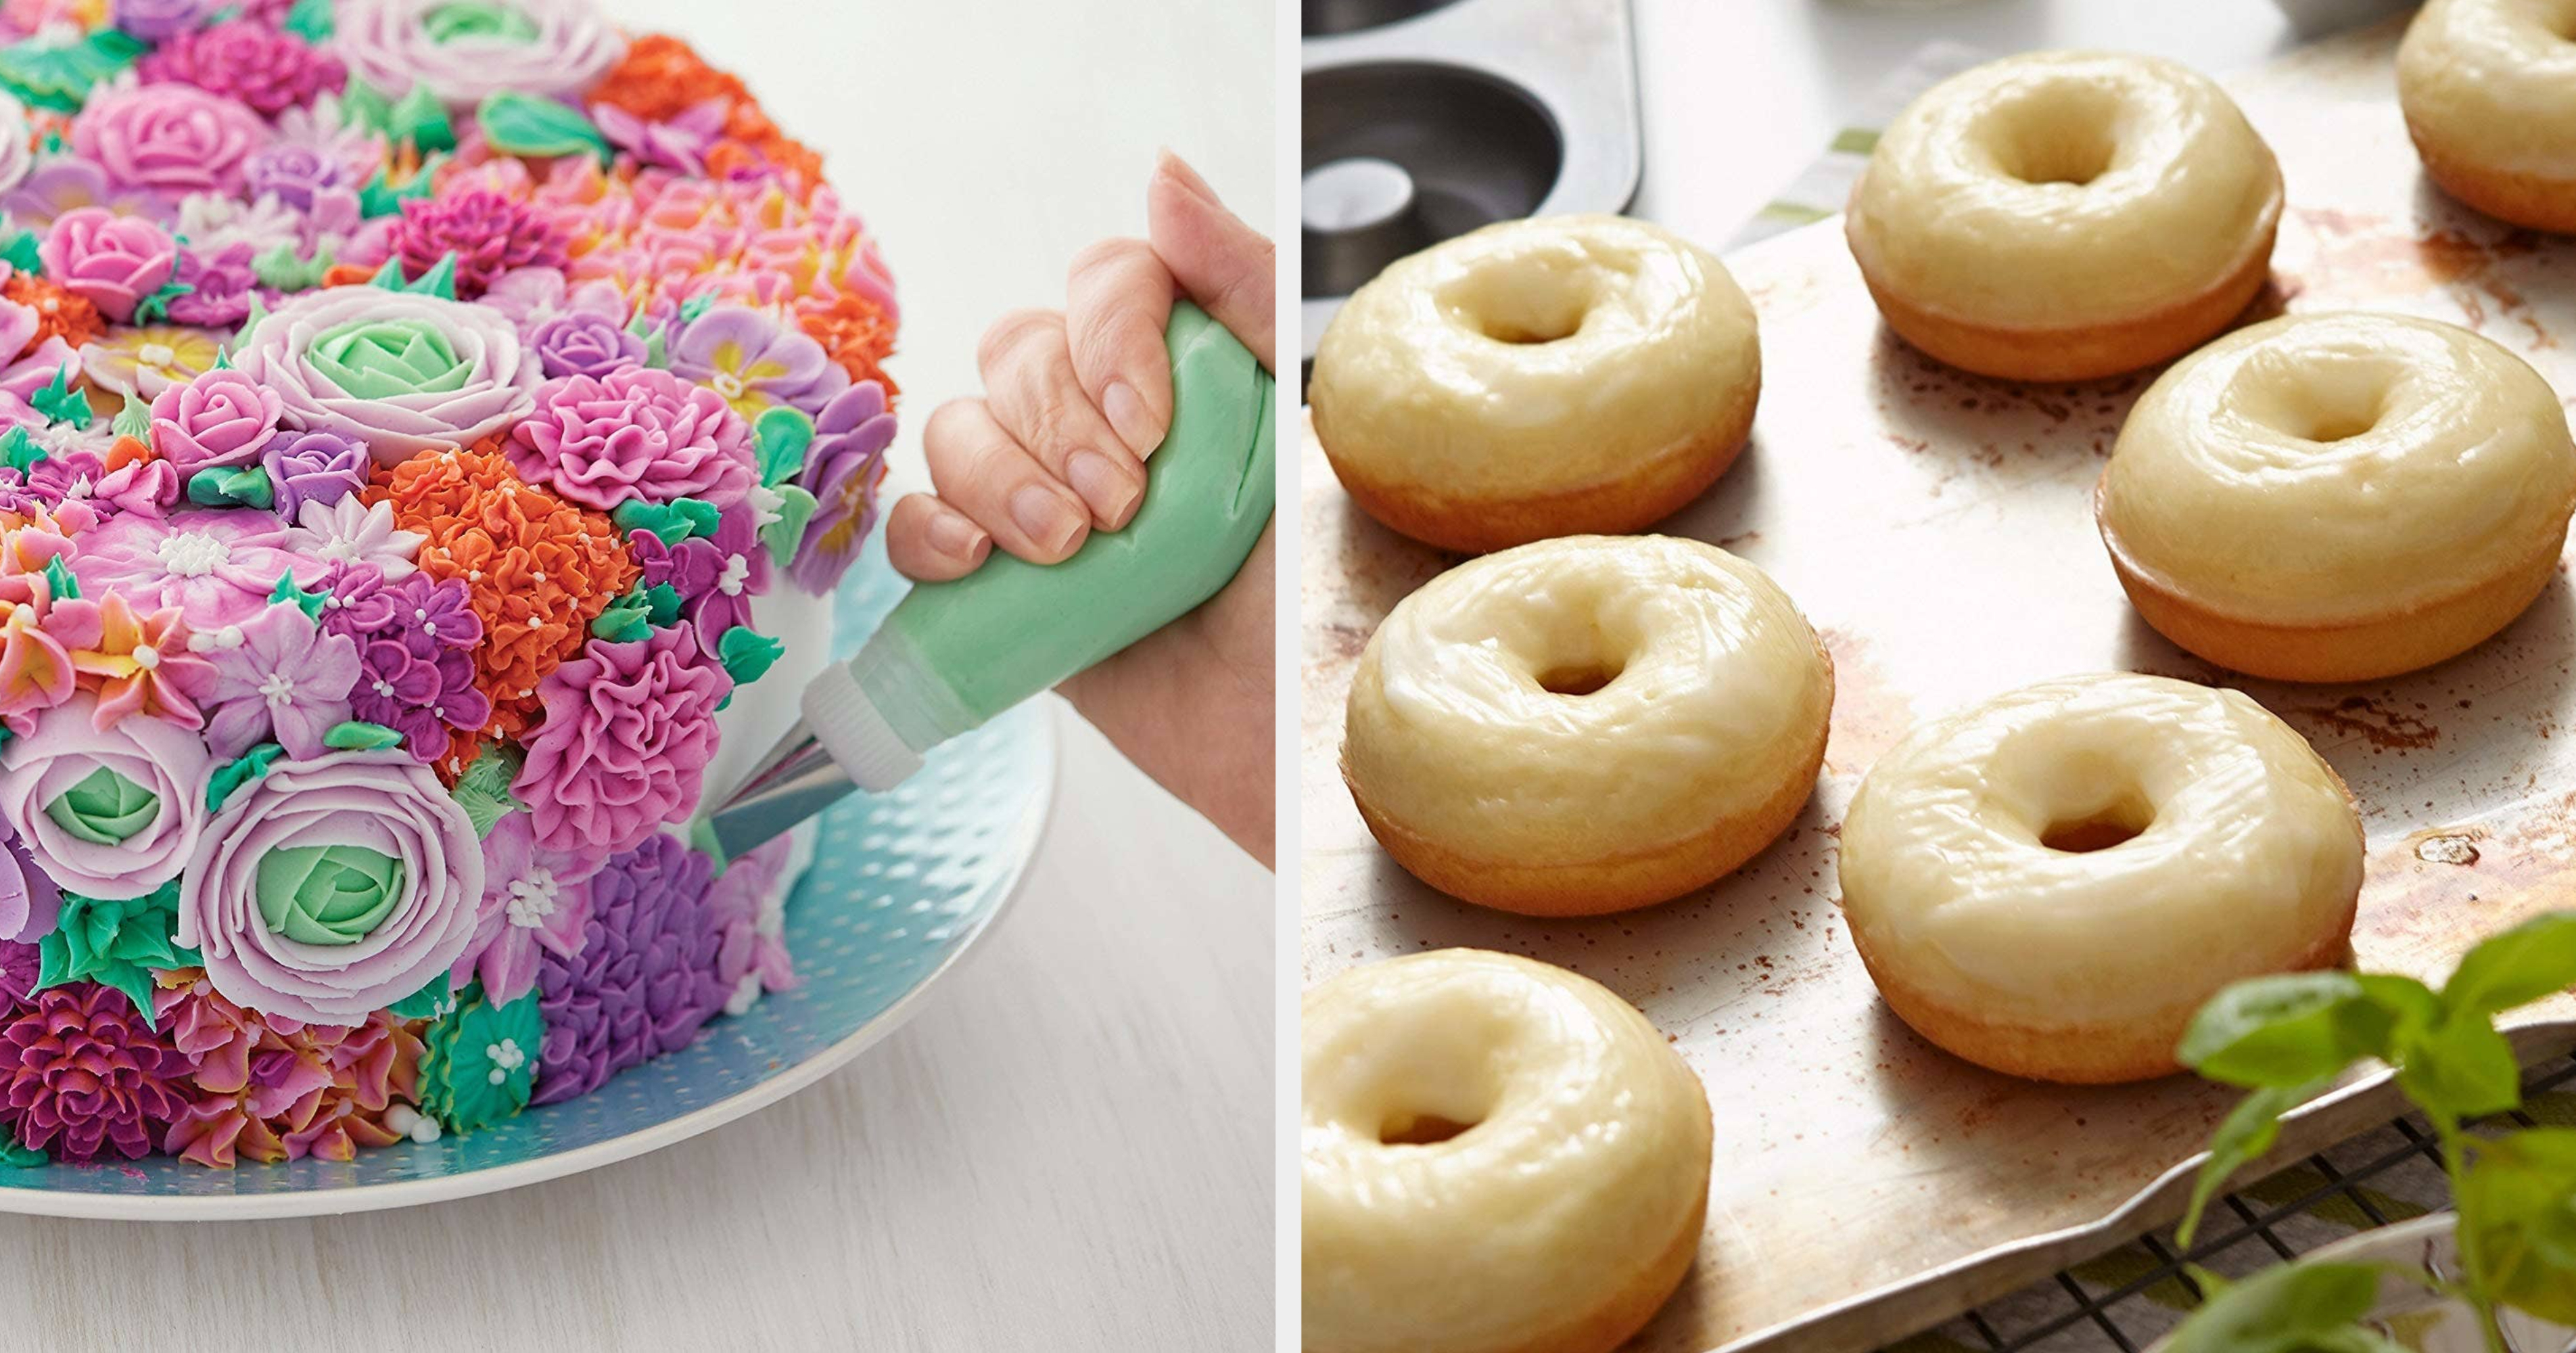 Affordable Gift Ideas for Bakers - I Scream for Buttercream